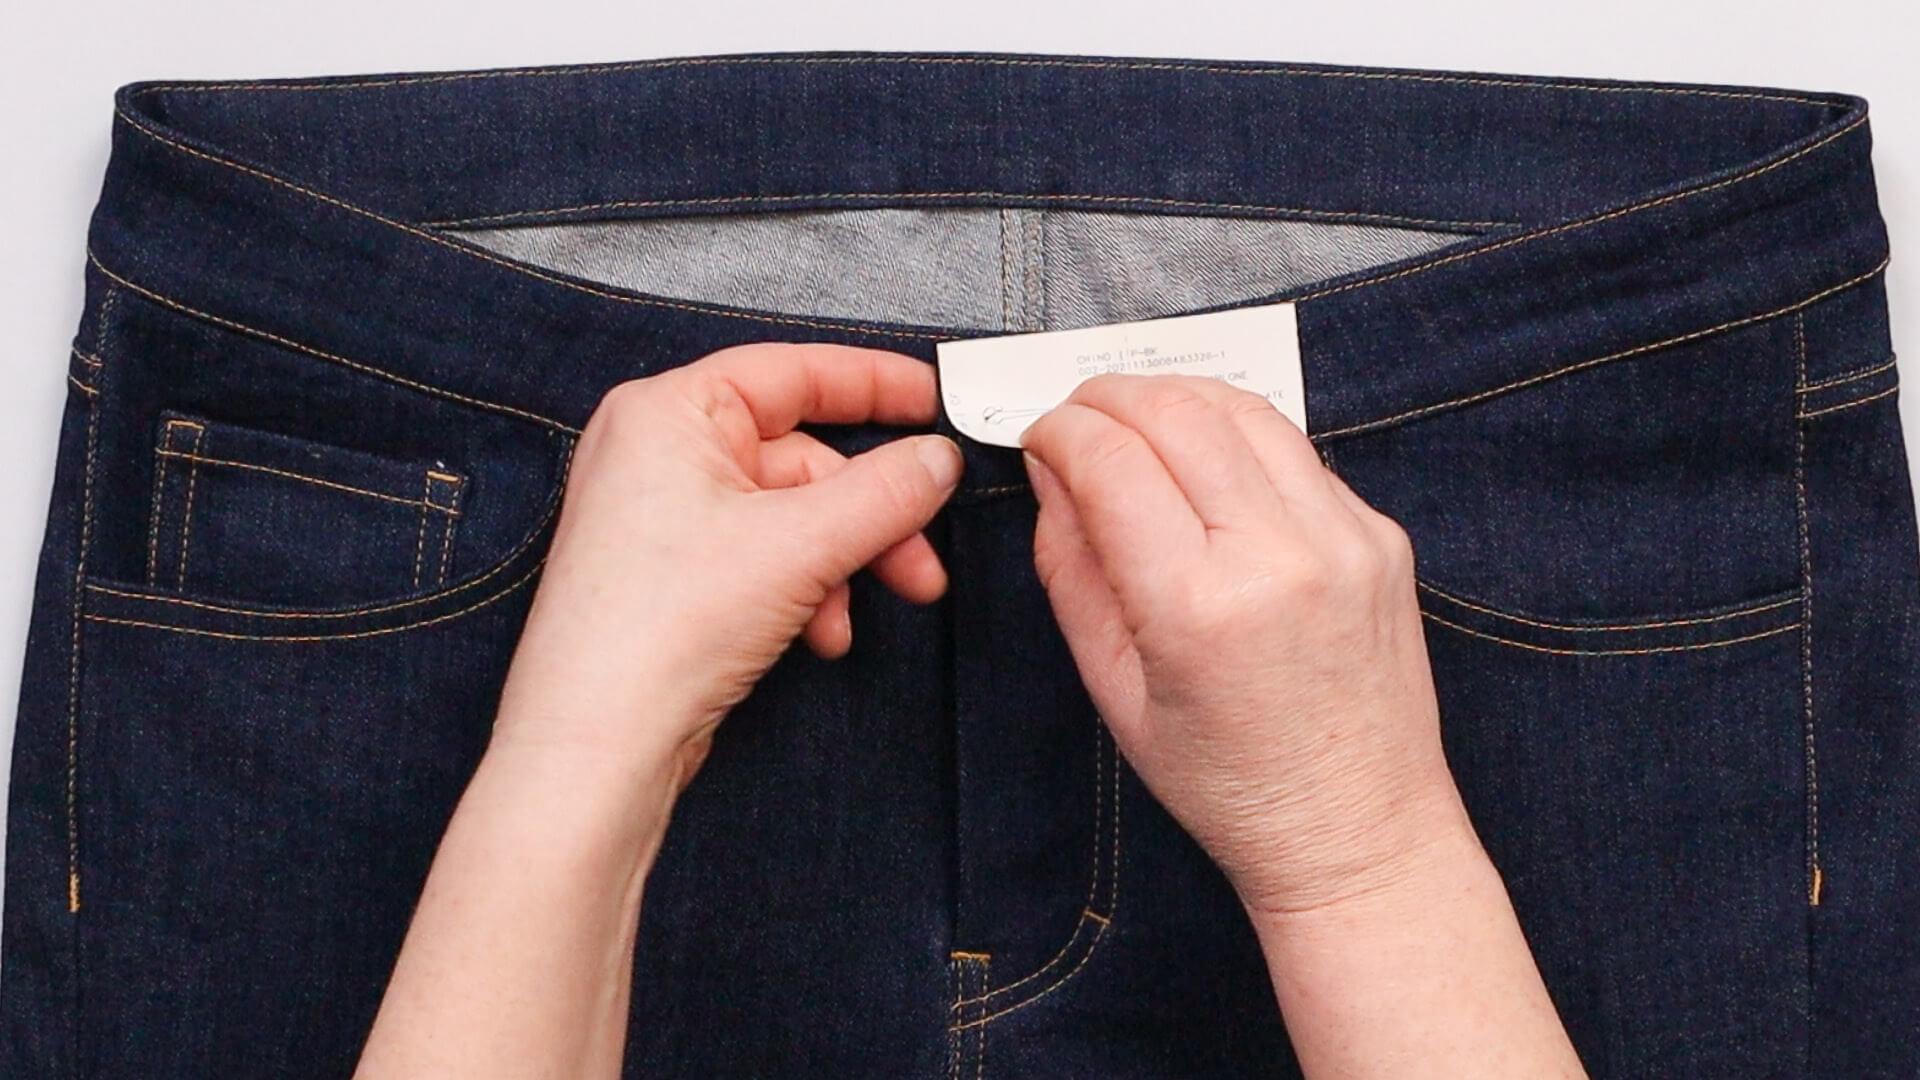 smartPATTERN Nähanleitung angesetzten Bund an Jeanshose nähen - Knopflochbeginn mit Schablone markieren